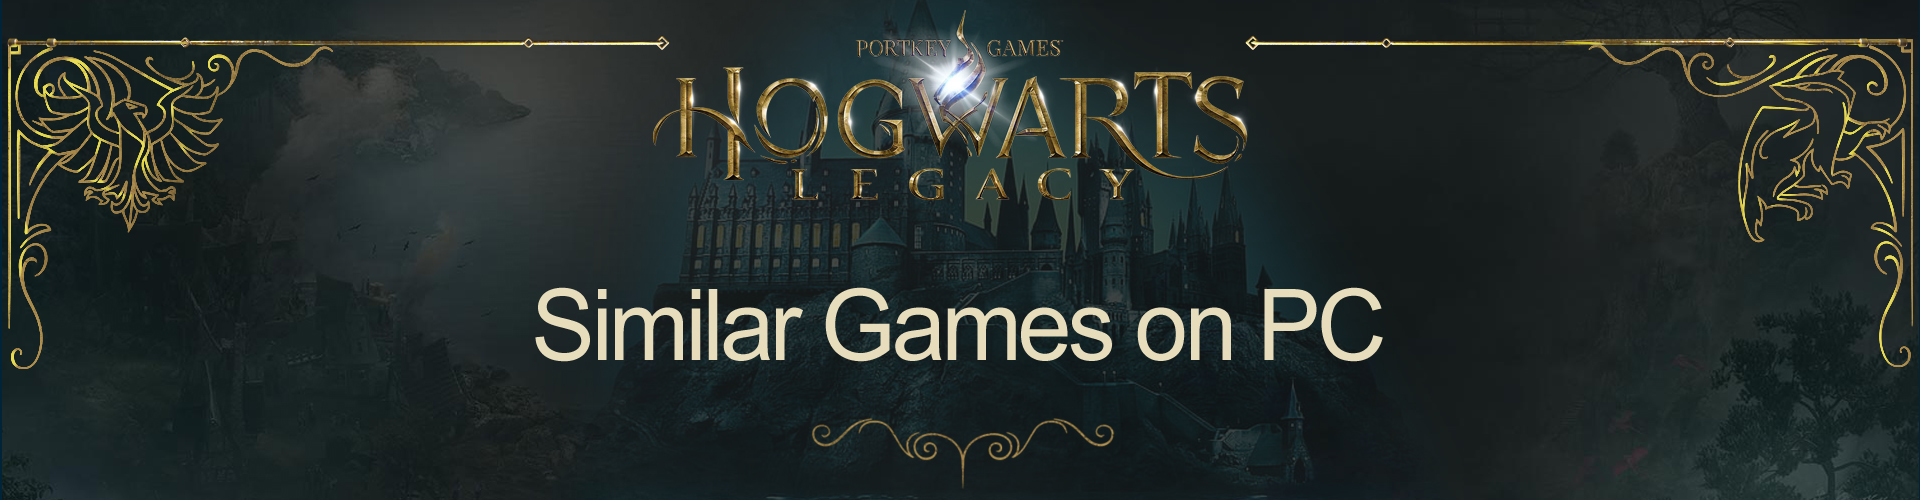 Hogwarts Legacy Similar Games on PC